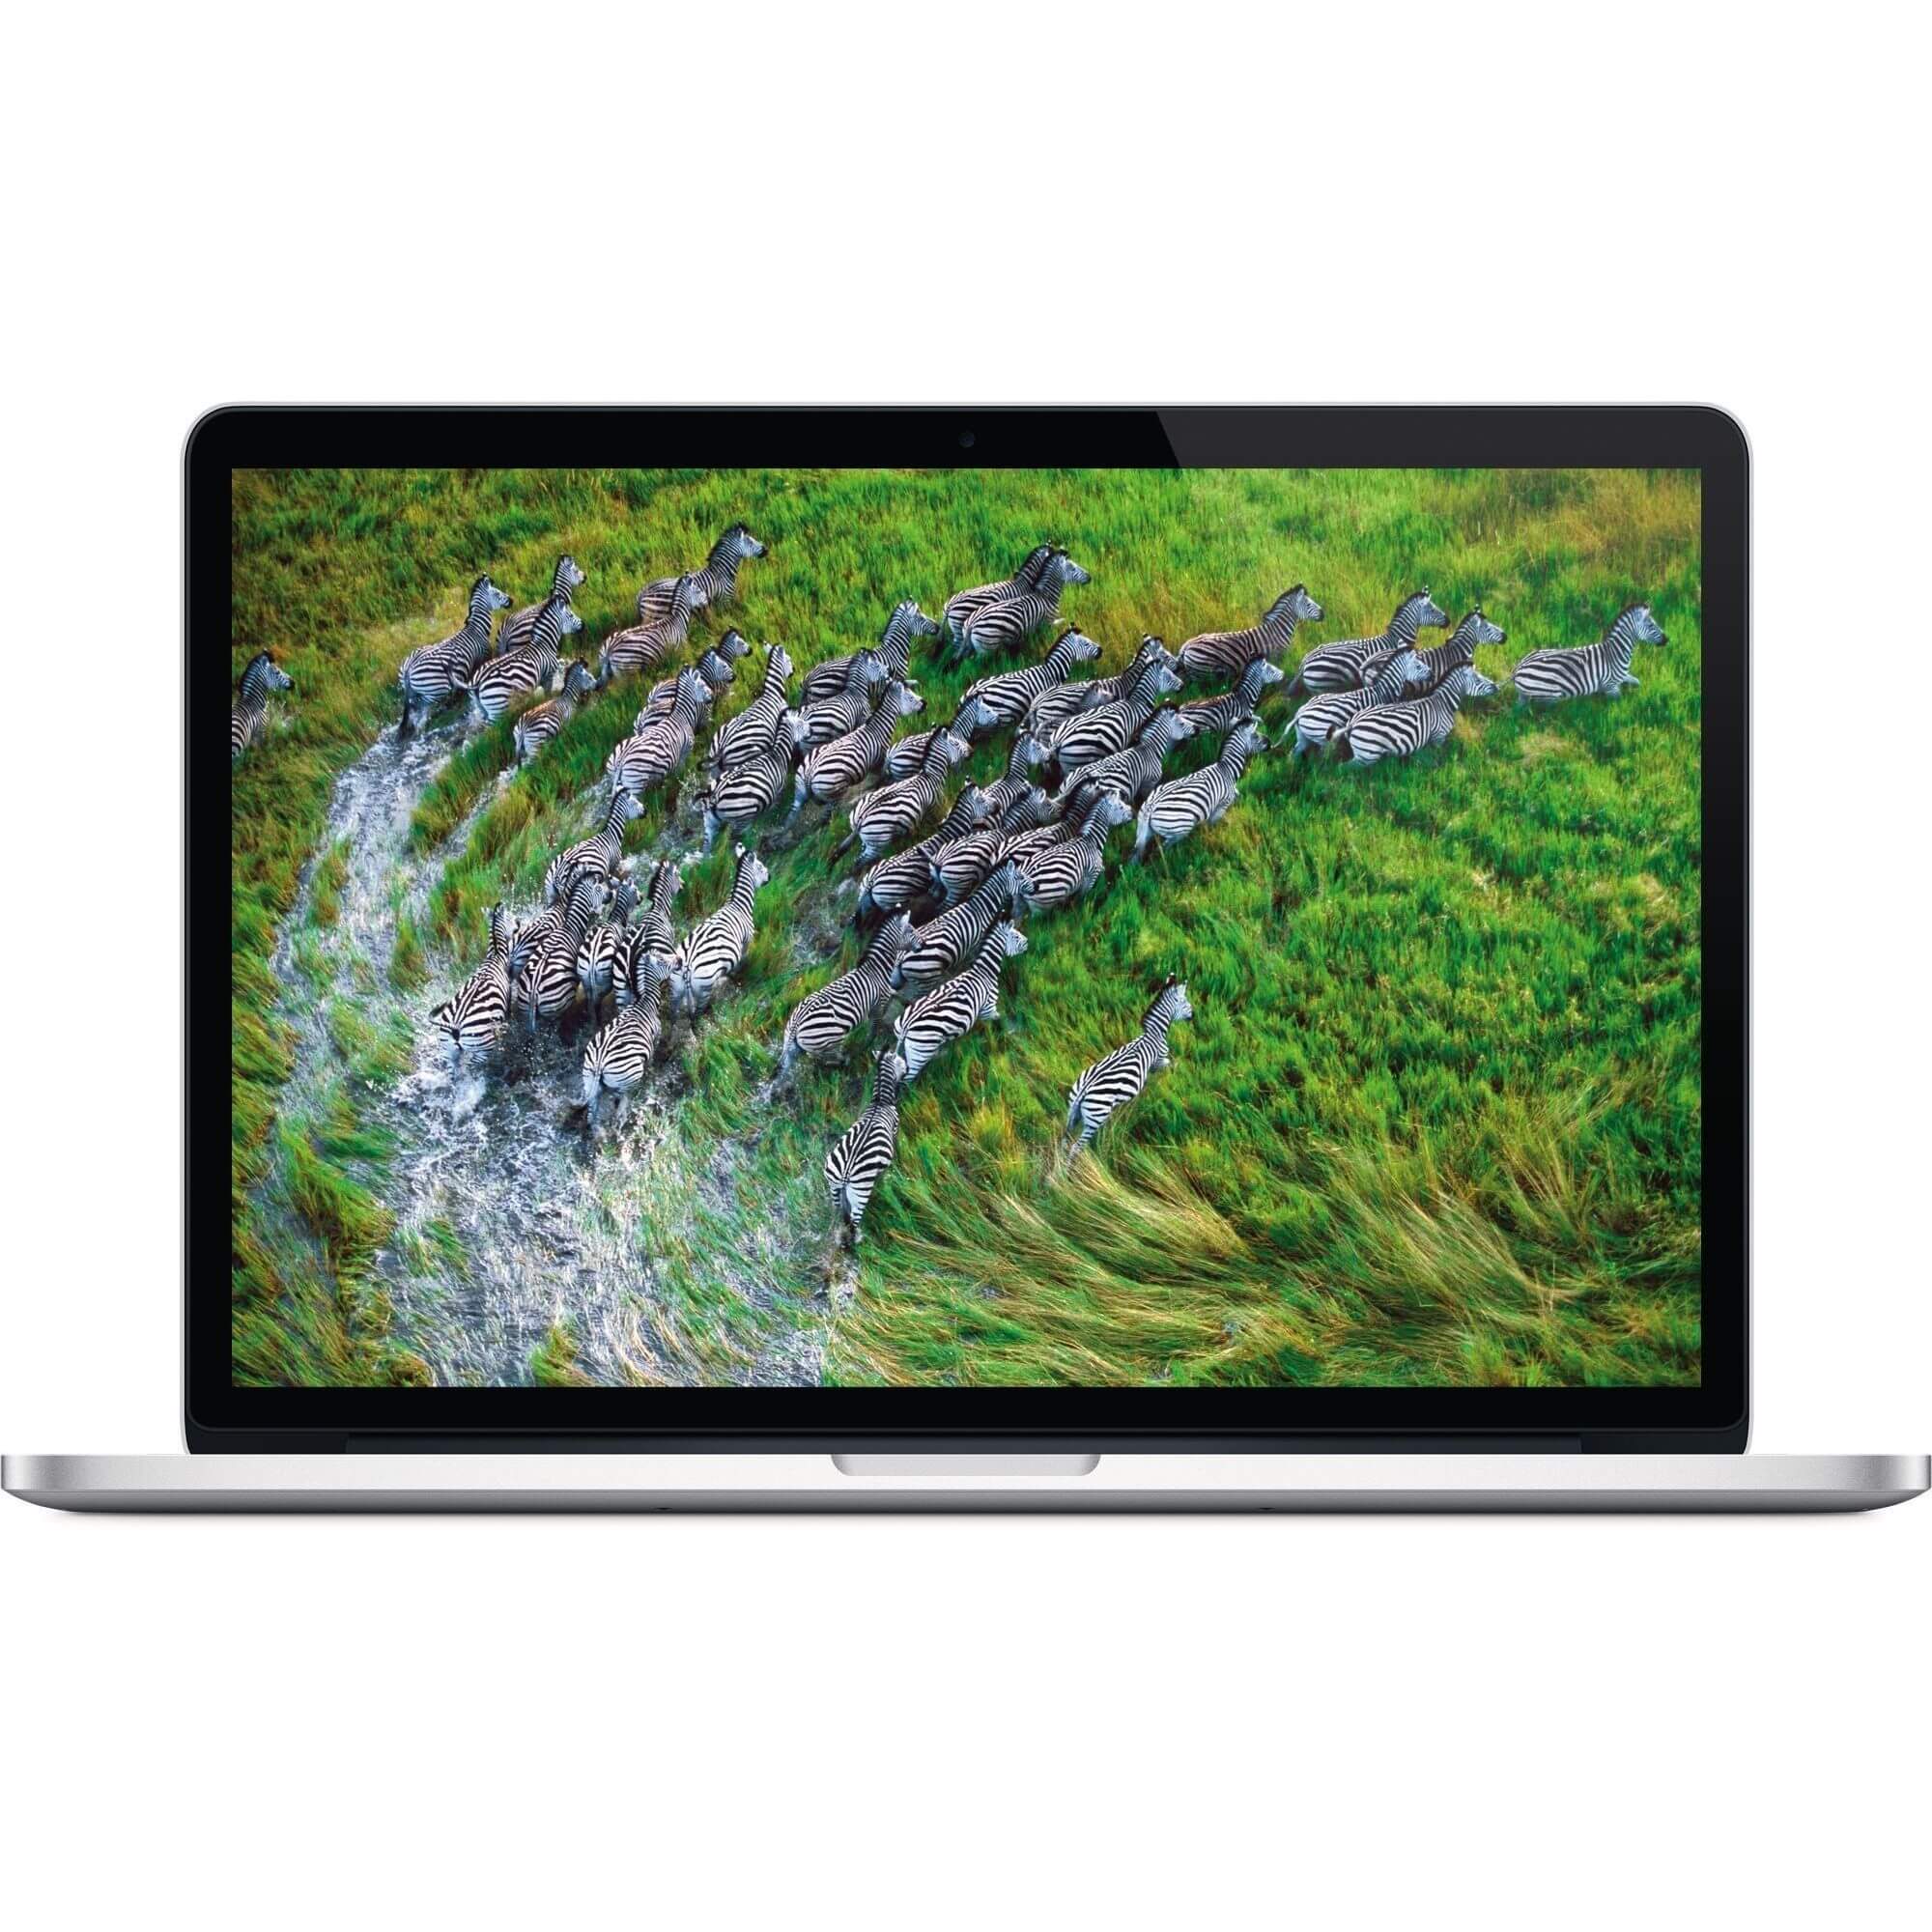  Laptop MacBook Apple Pro, Intel Core i7, 16GB DDR3, SSD 512GB, AMD Radeon R9 M370X 2GB, Mac OS X 